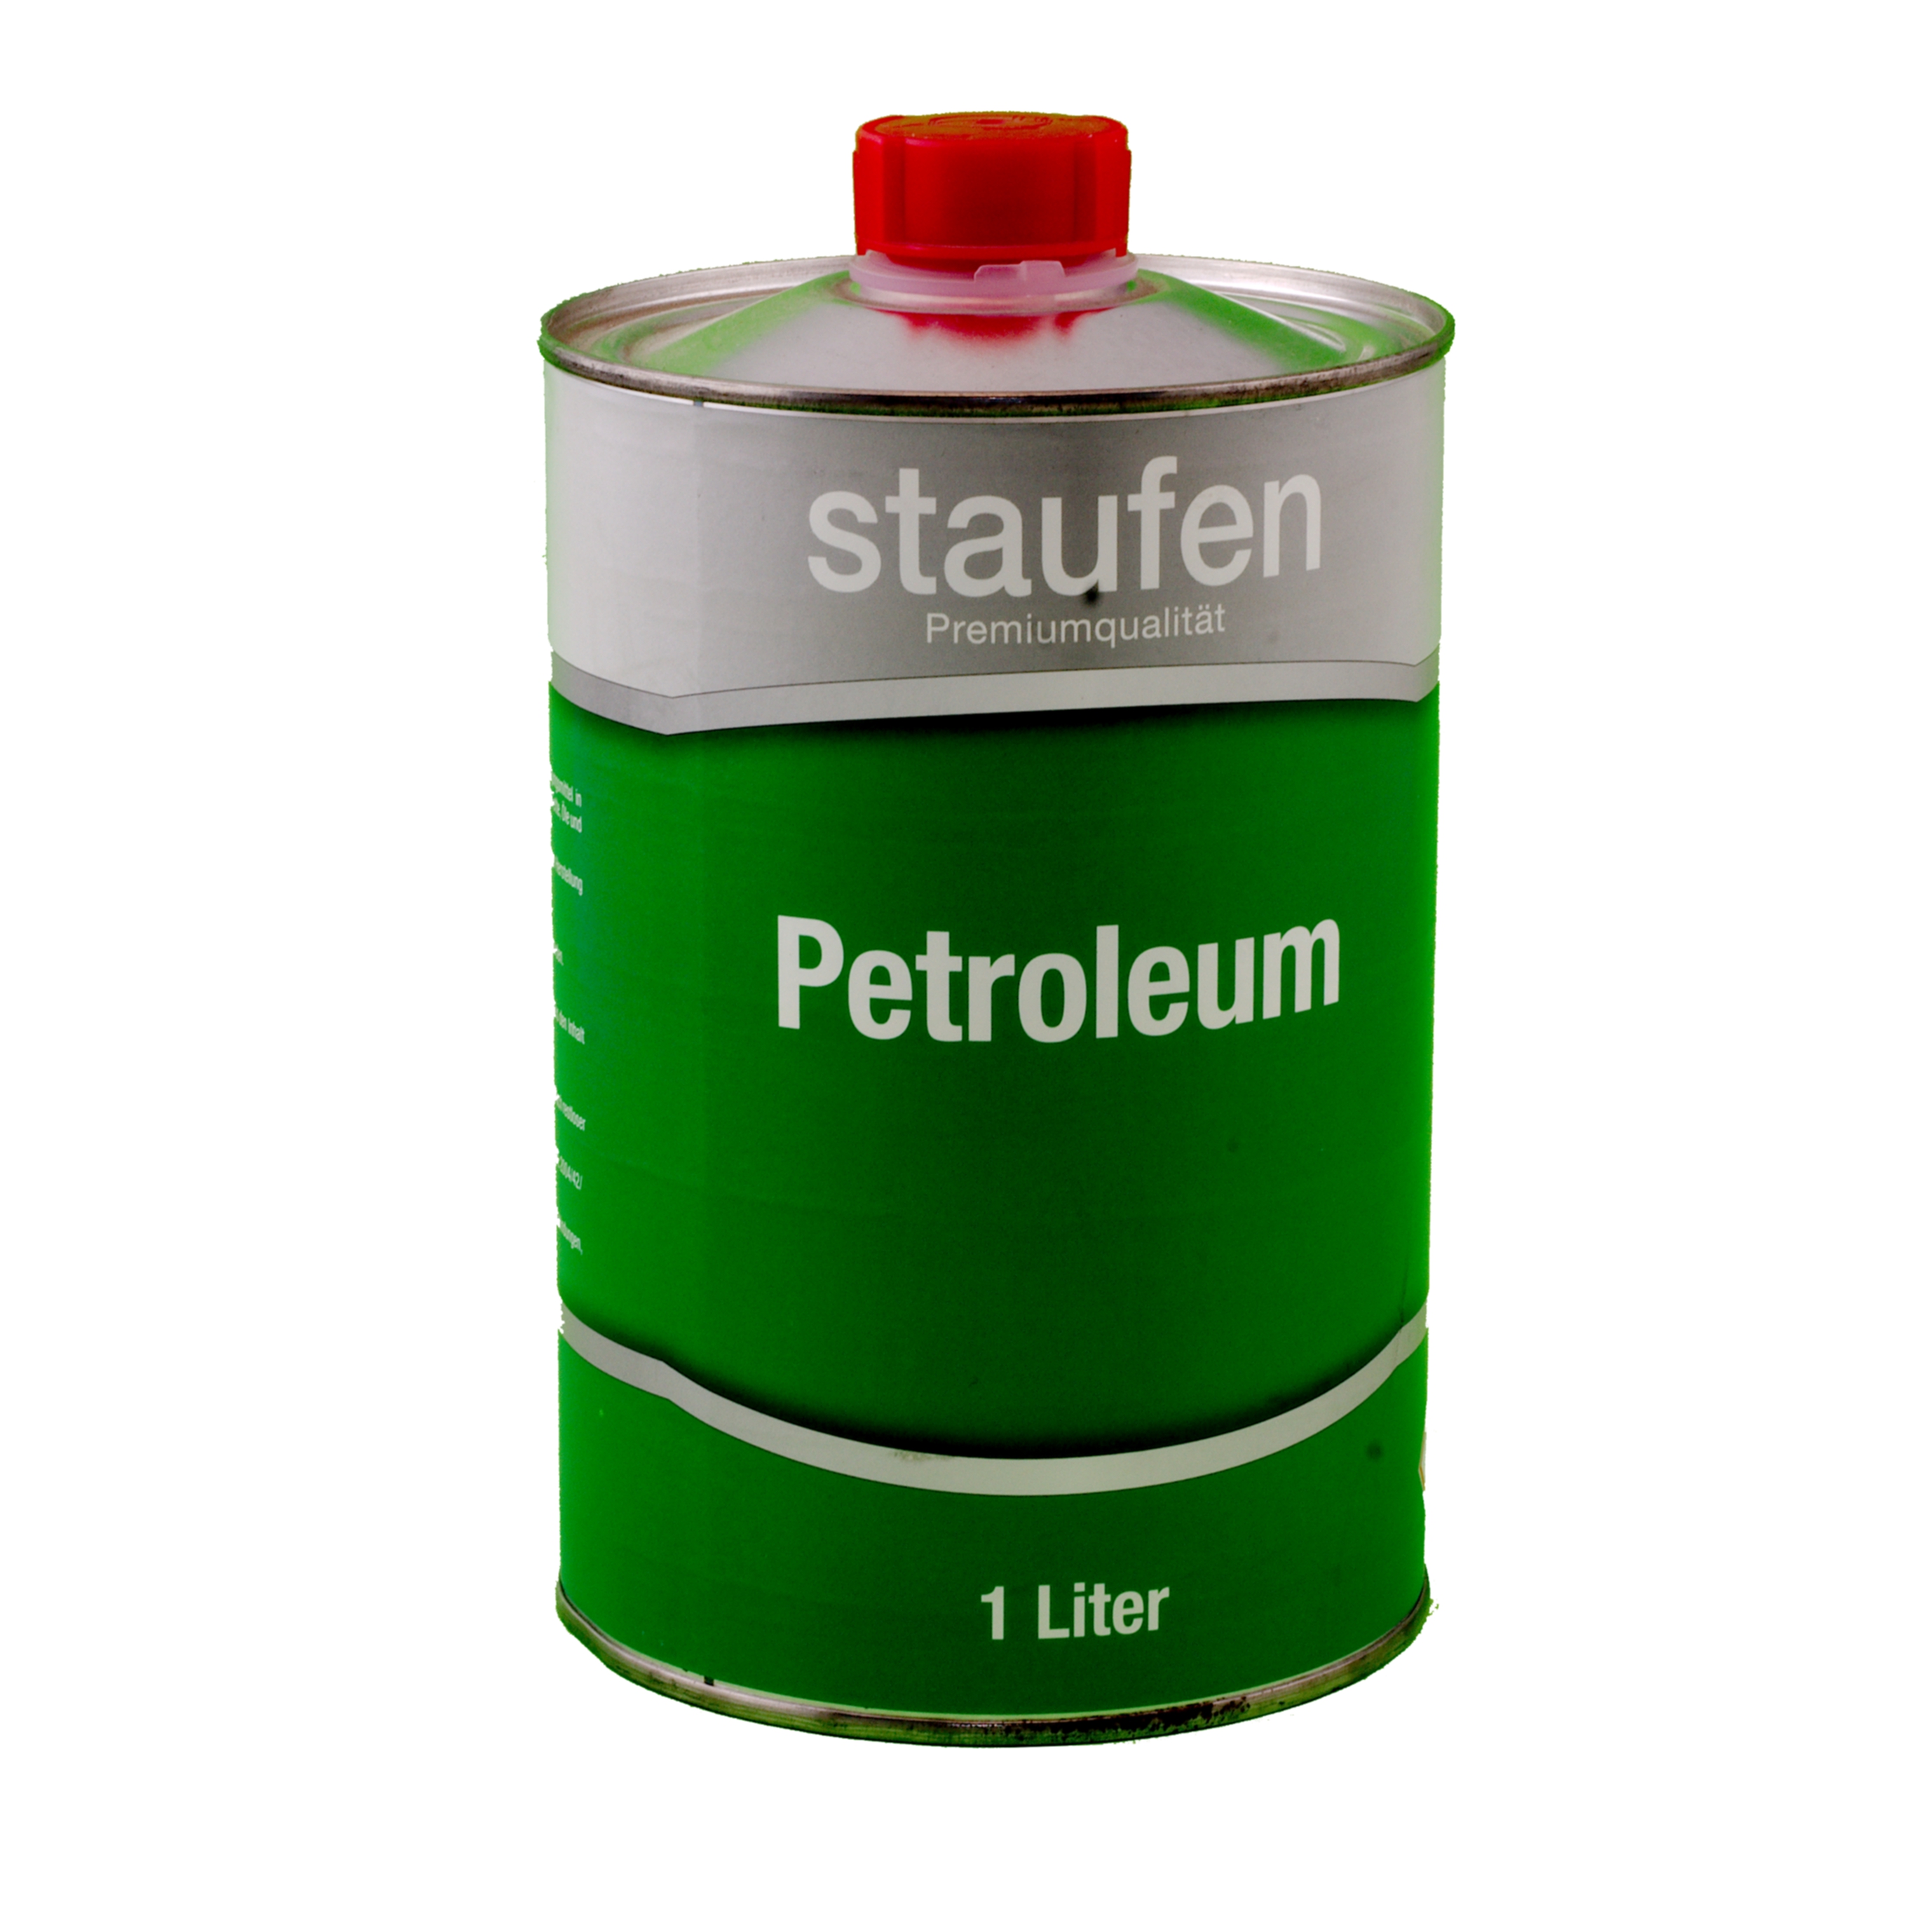 Staufen Petroleum  1 ltr.